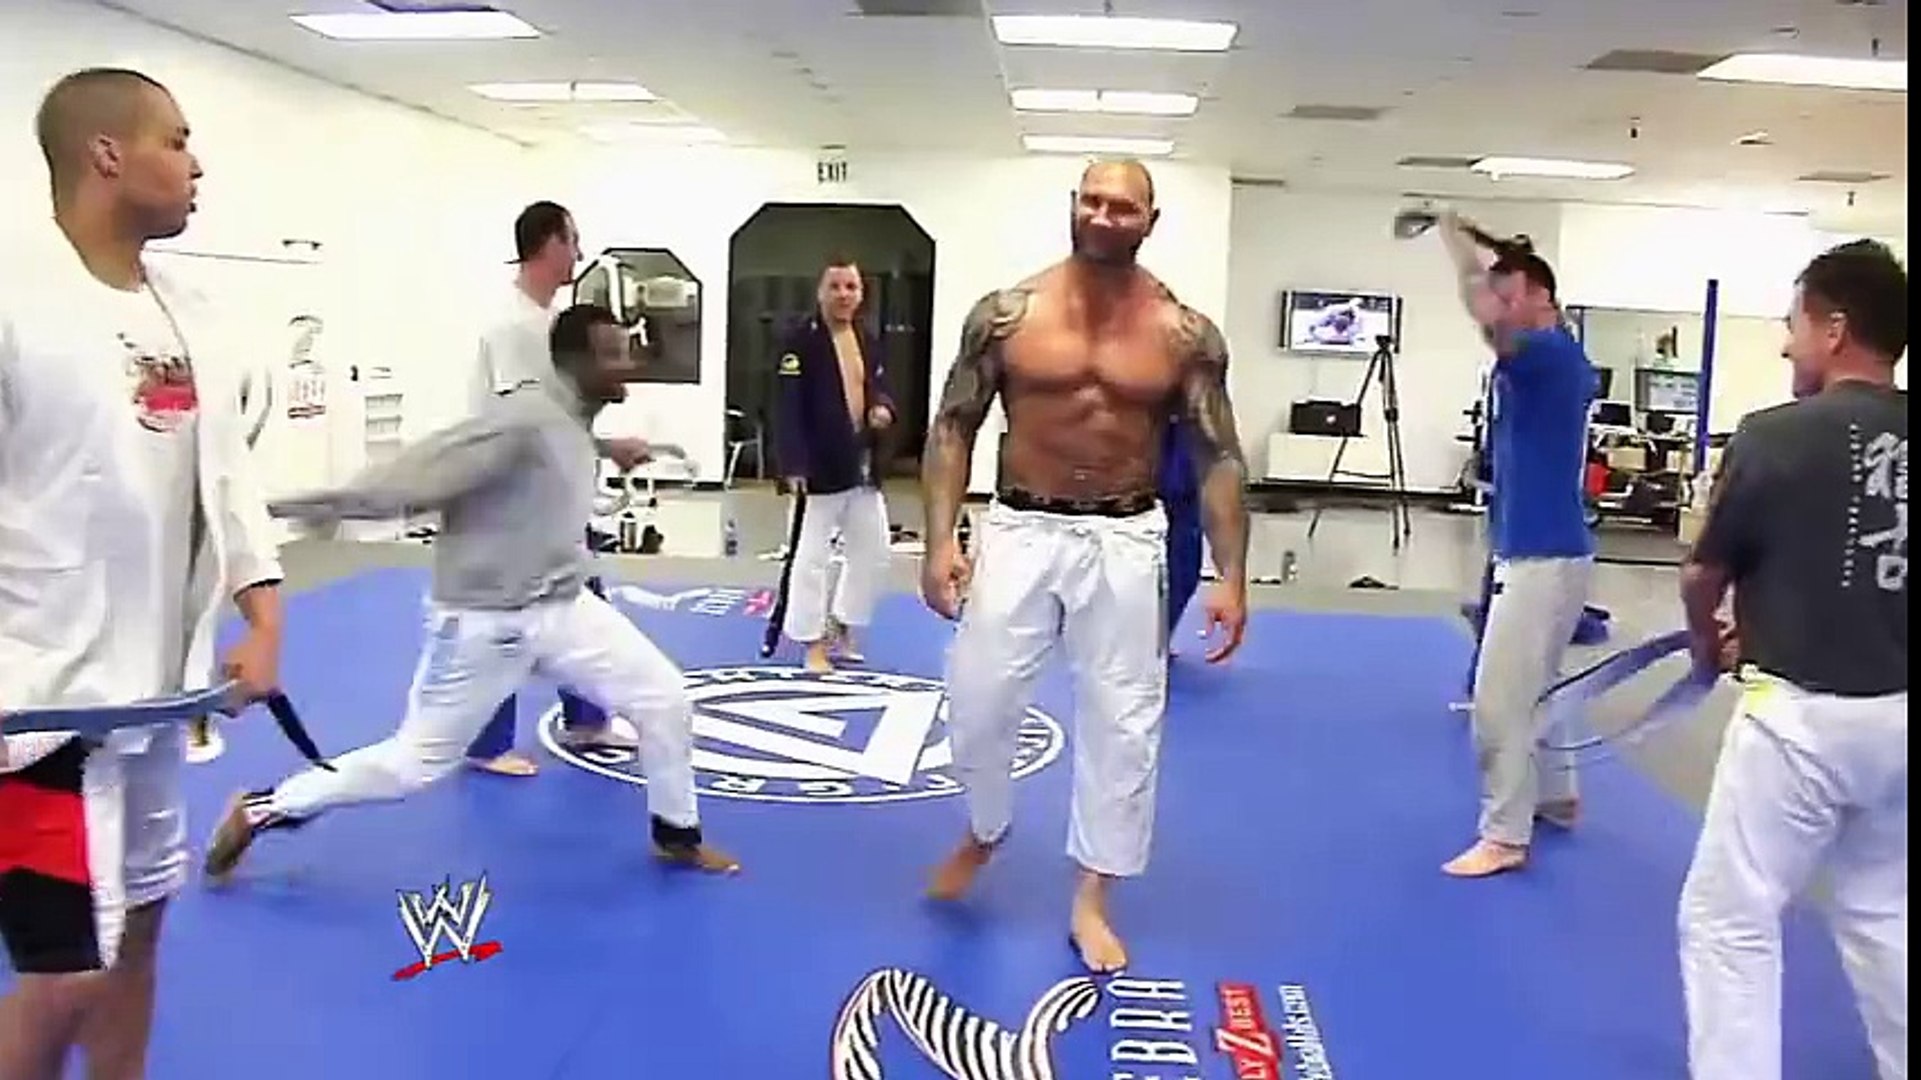 Dave Batista Passando no Corredor no Jiu-Jitsu - Vídeo Dailymotion